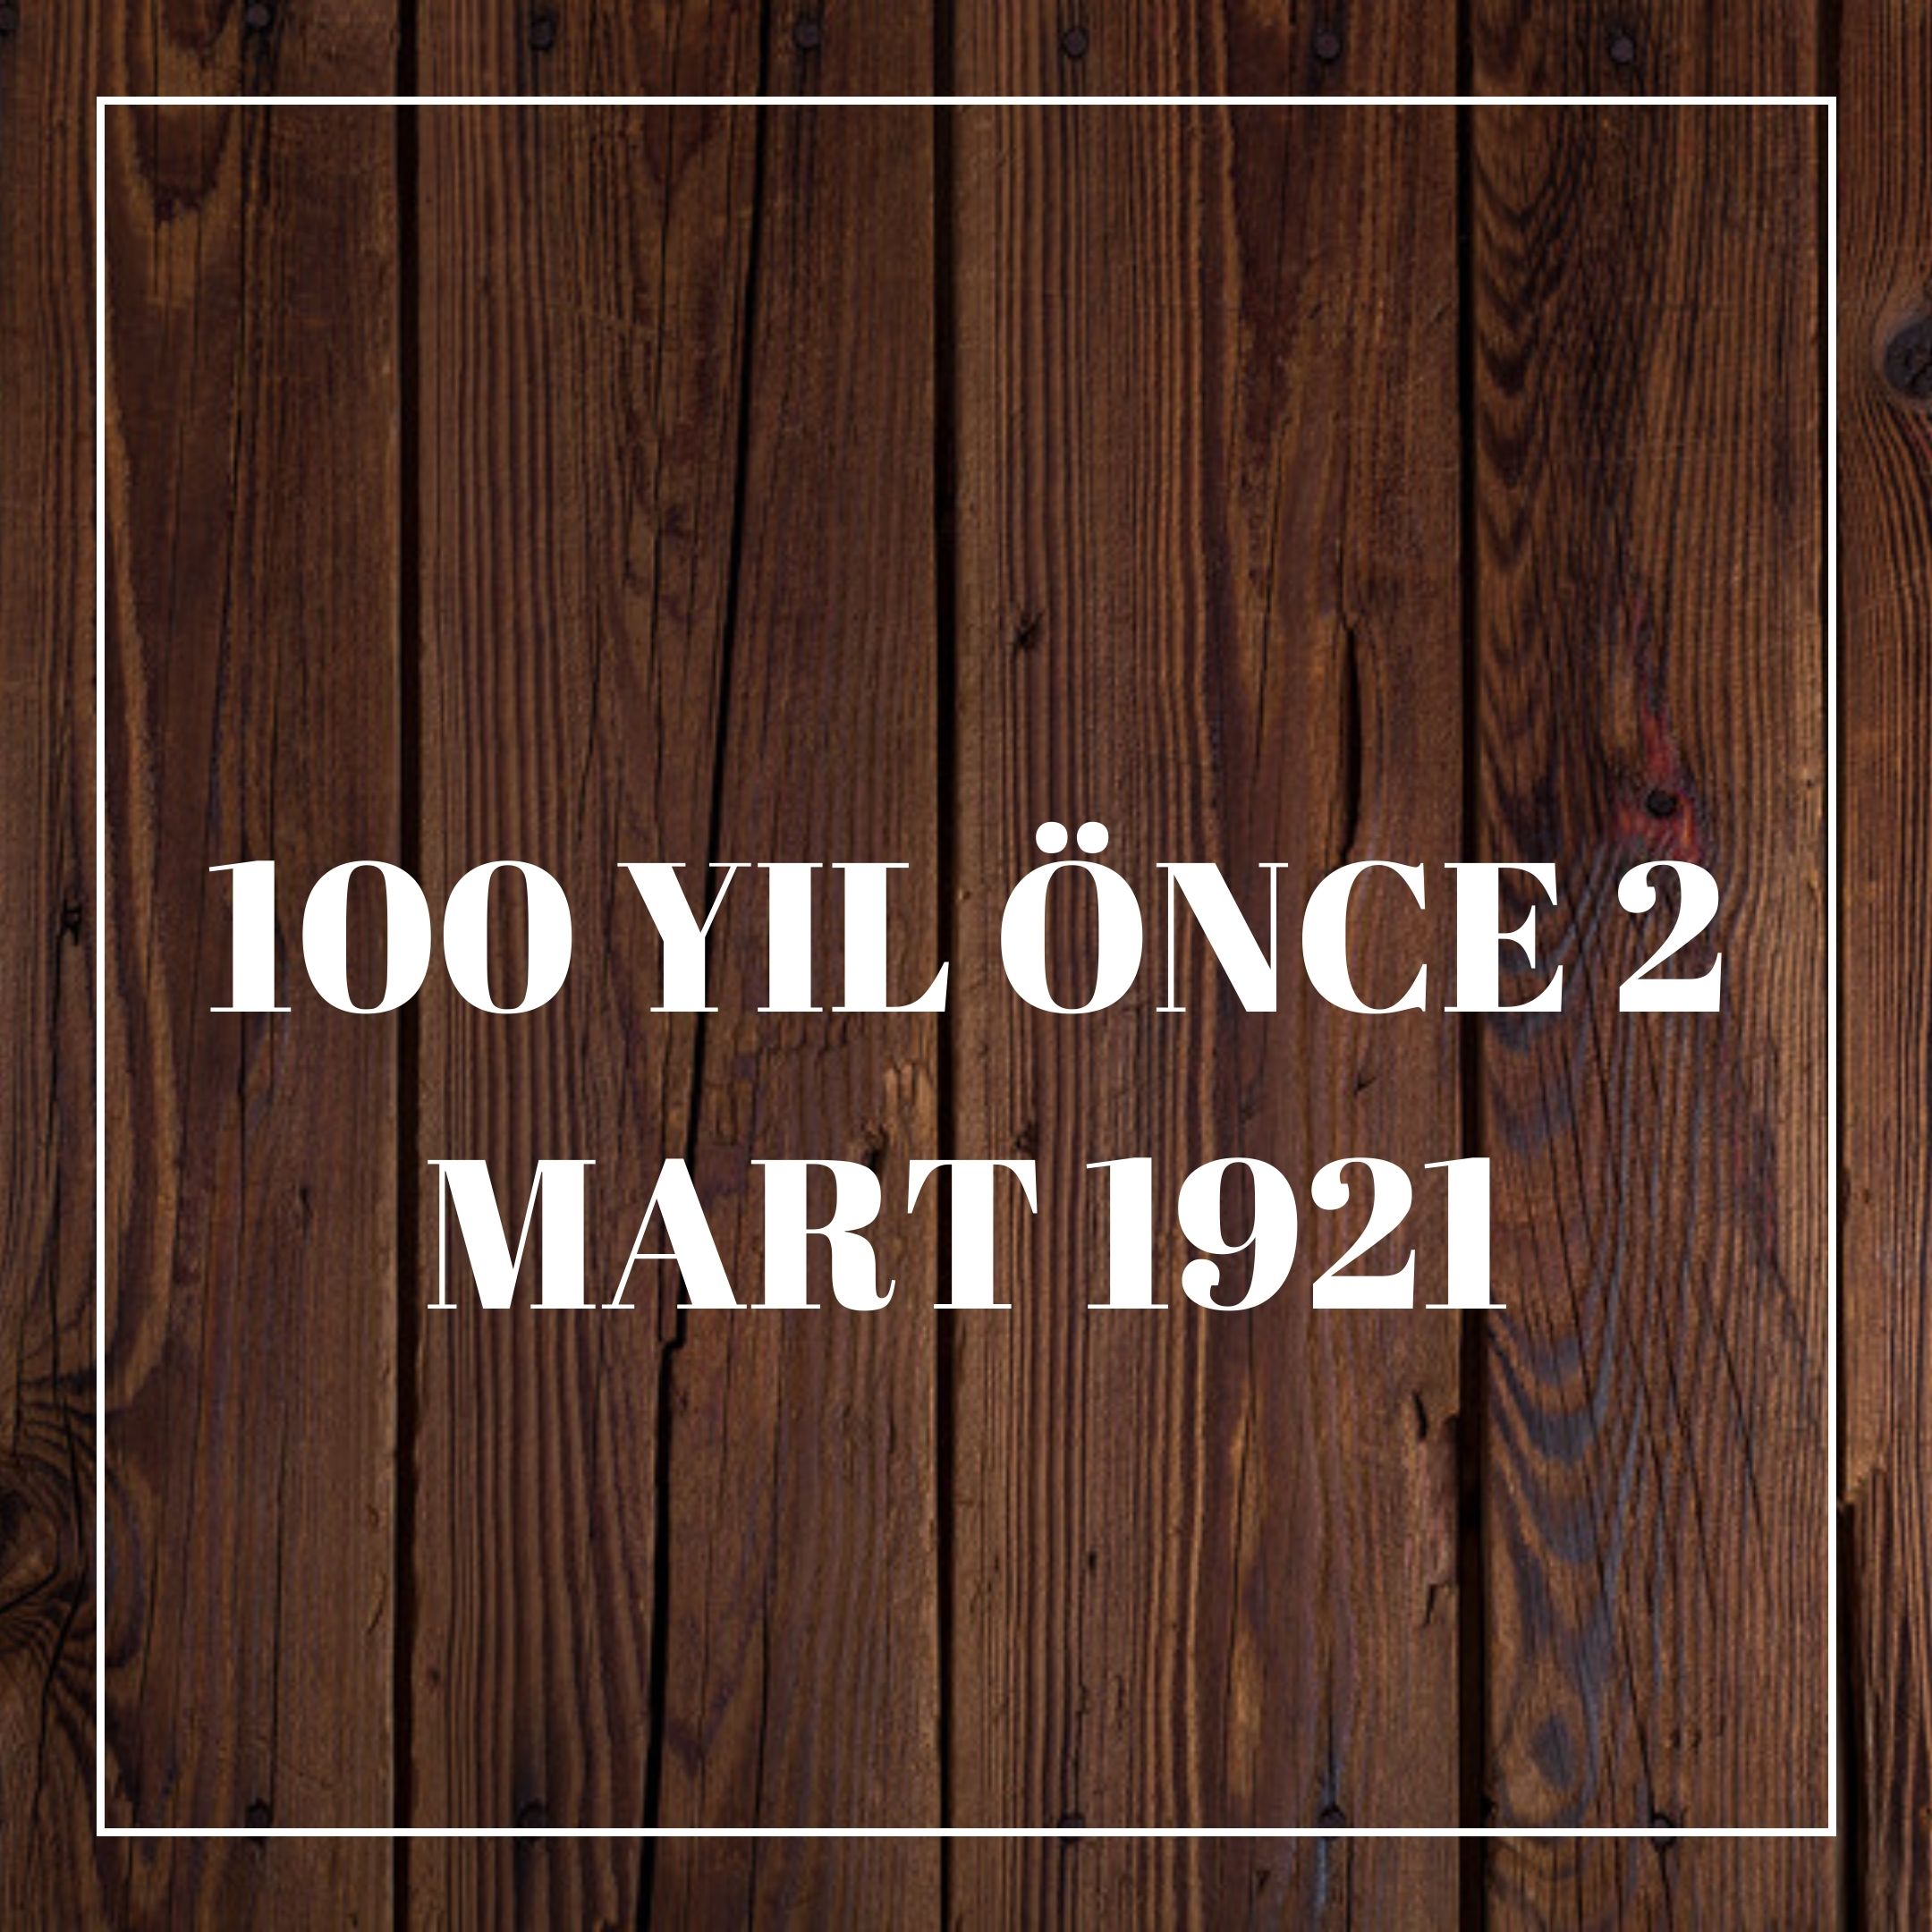 100 YIL ÖNCE 2 MART 1921